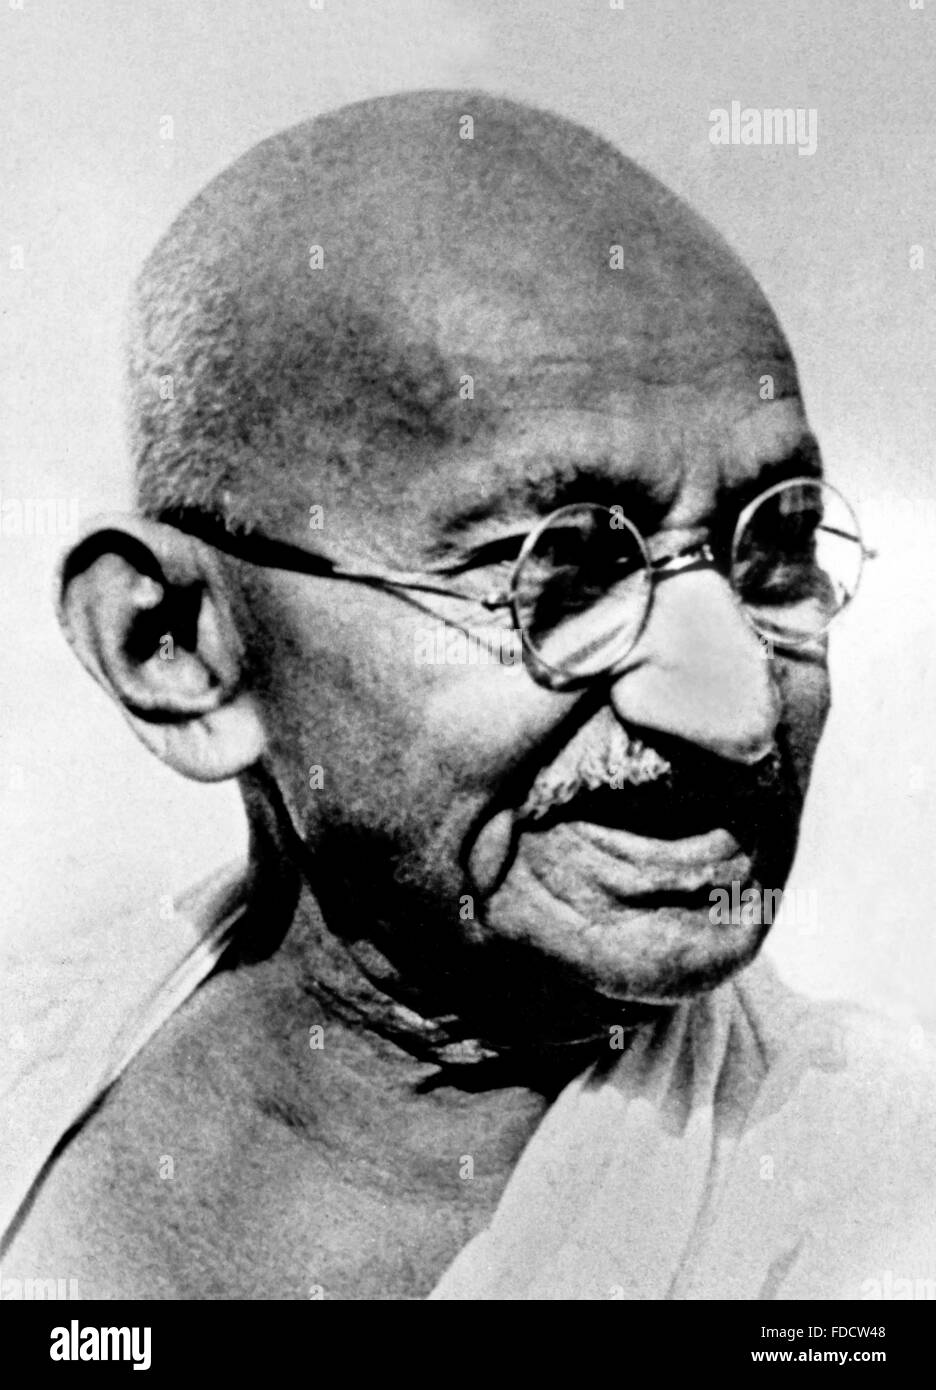 Mahatma Gandhi. Retrato de Mohandas Karamchand Gandhi, ampliamente conocido como Mahatma Gandhi. Fotografía tomada probablemente a principios de los años 40 Foto de stock